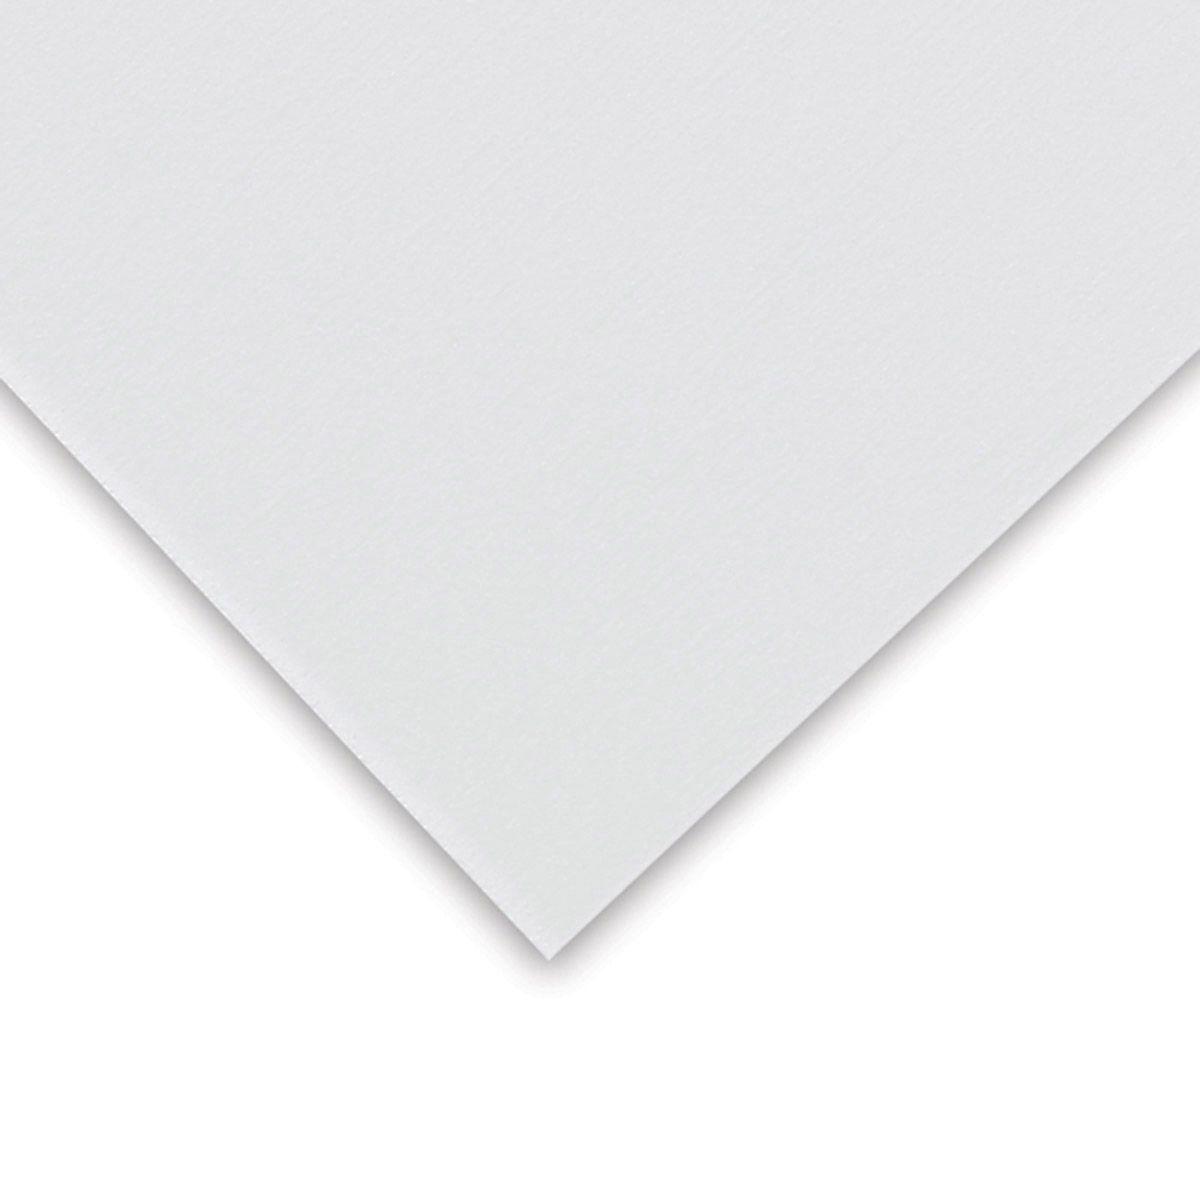 Pastel Premier Sanded Paper Med Grit, White Sheet, 20" x 26"